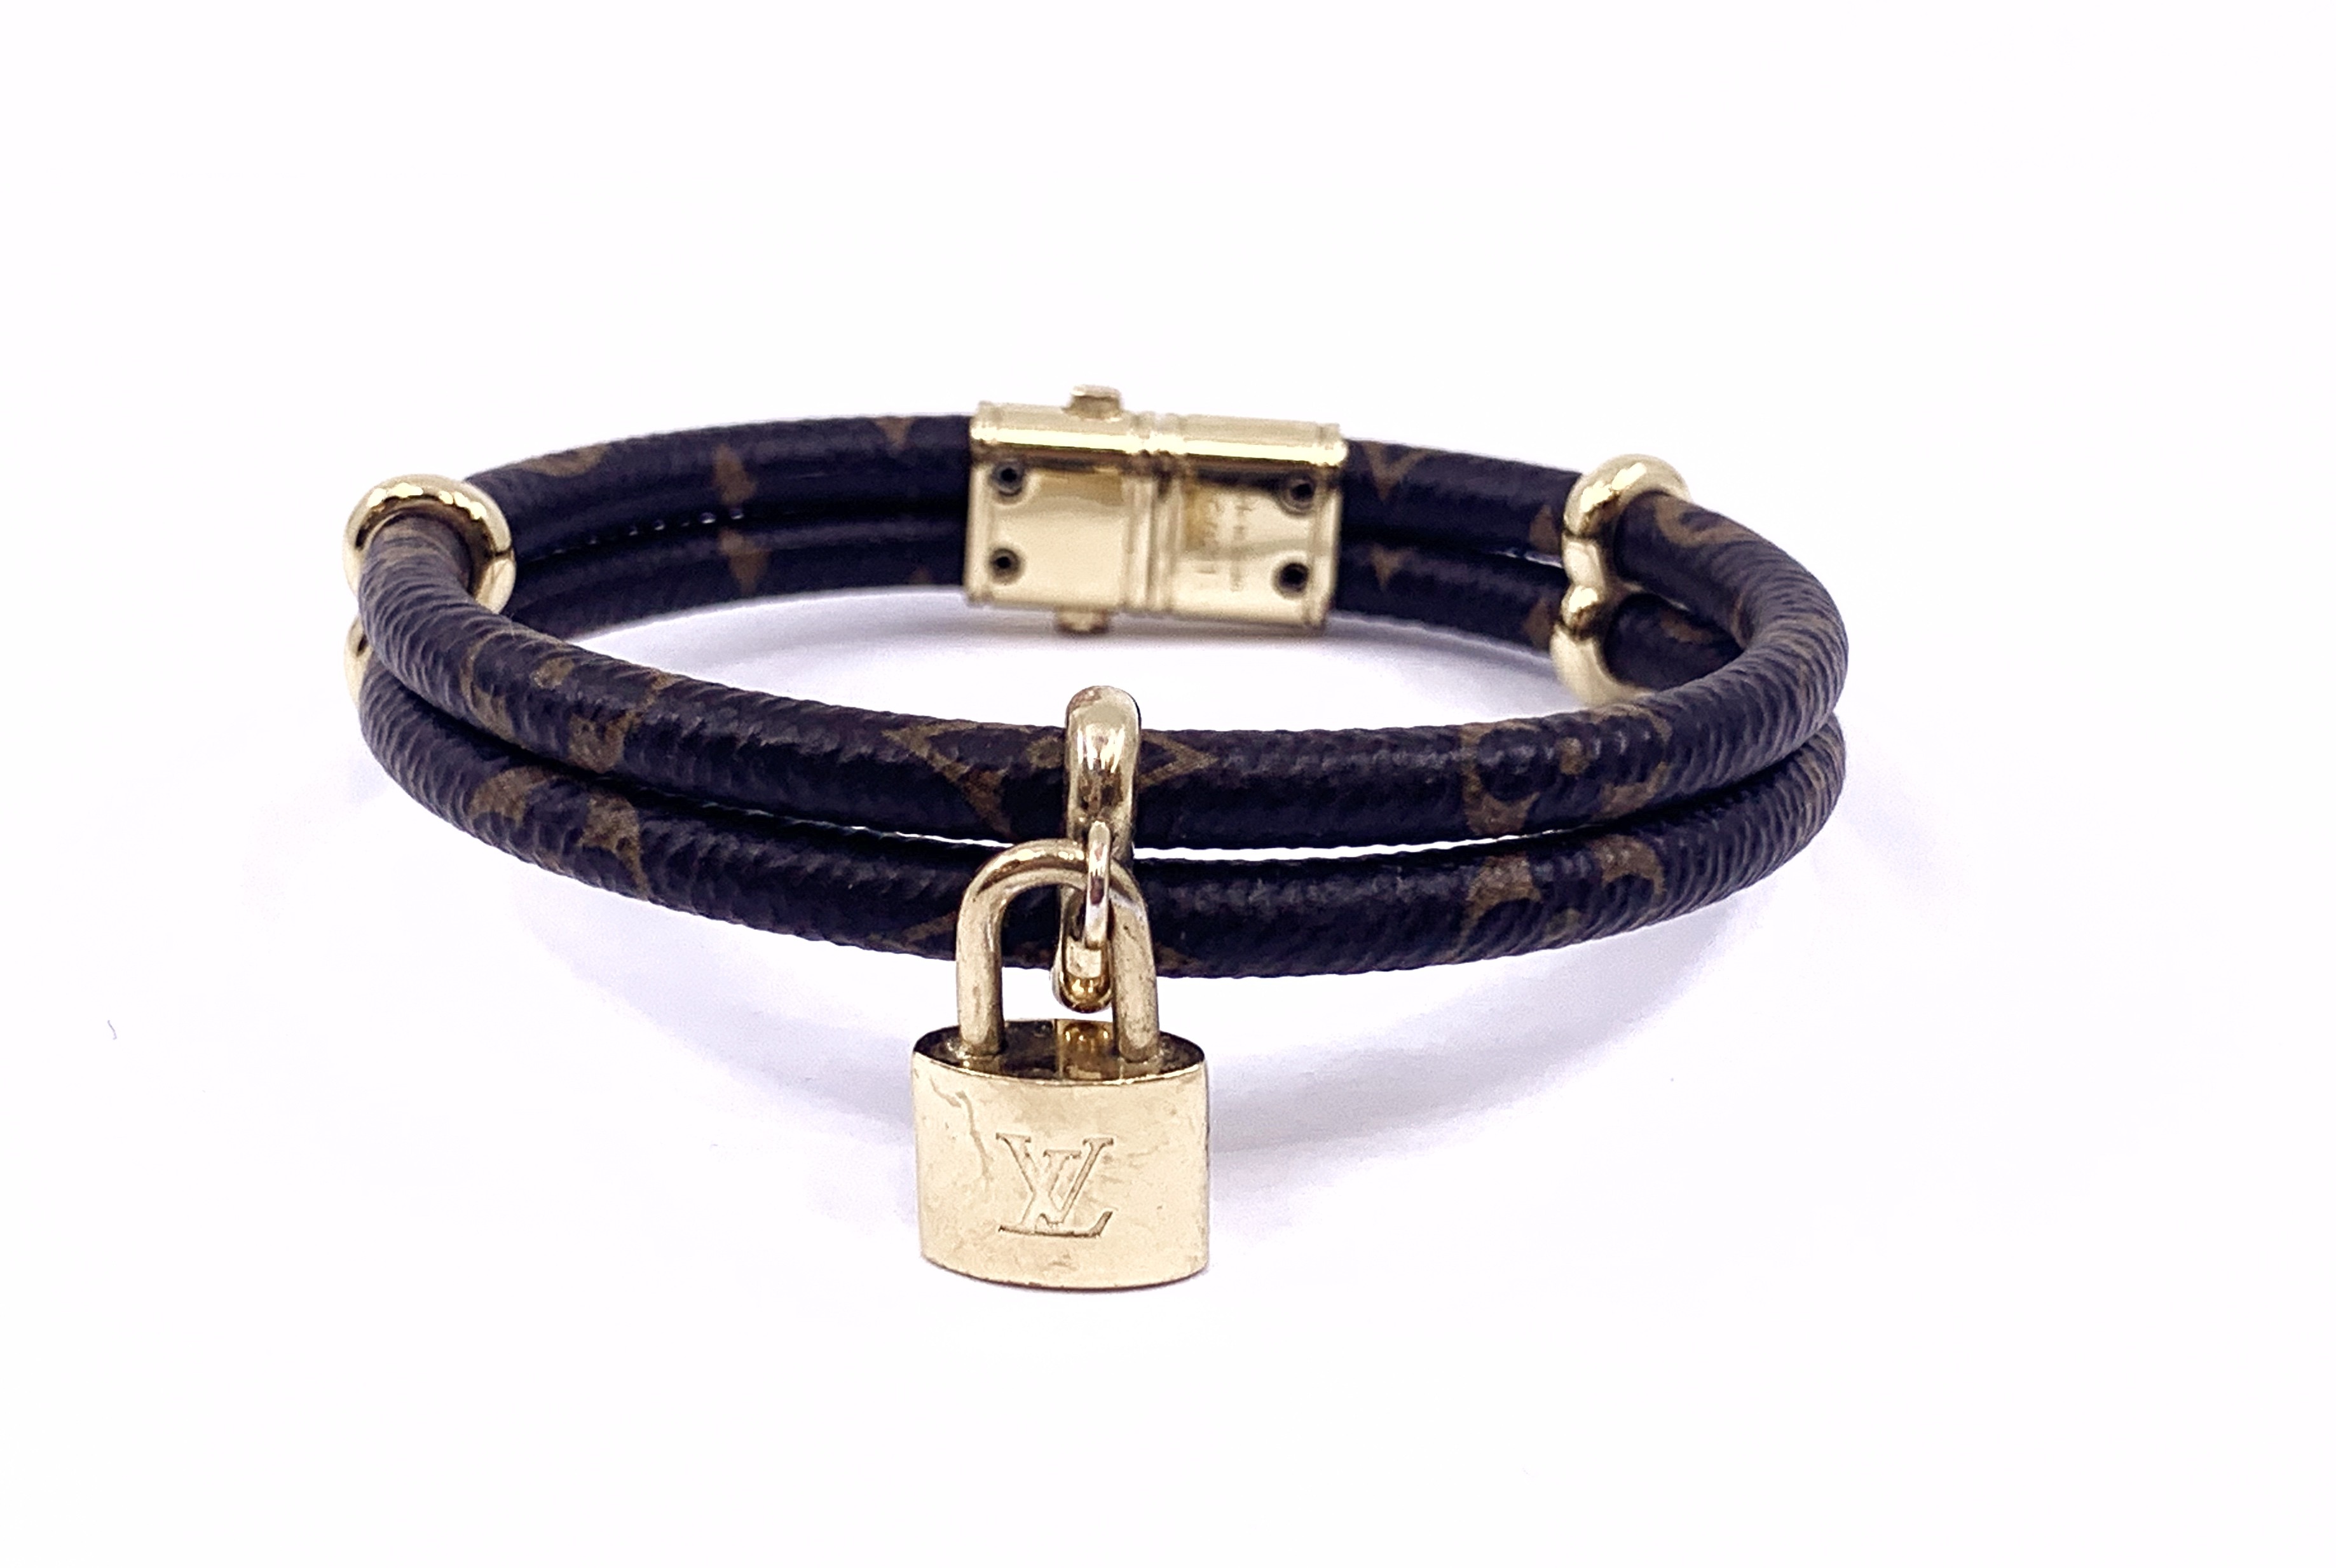 Louis Vuitton Keep It Double Bracelet Replica